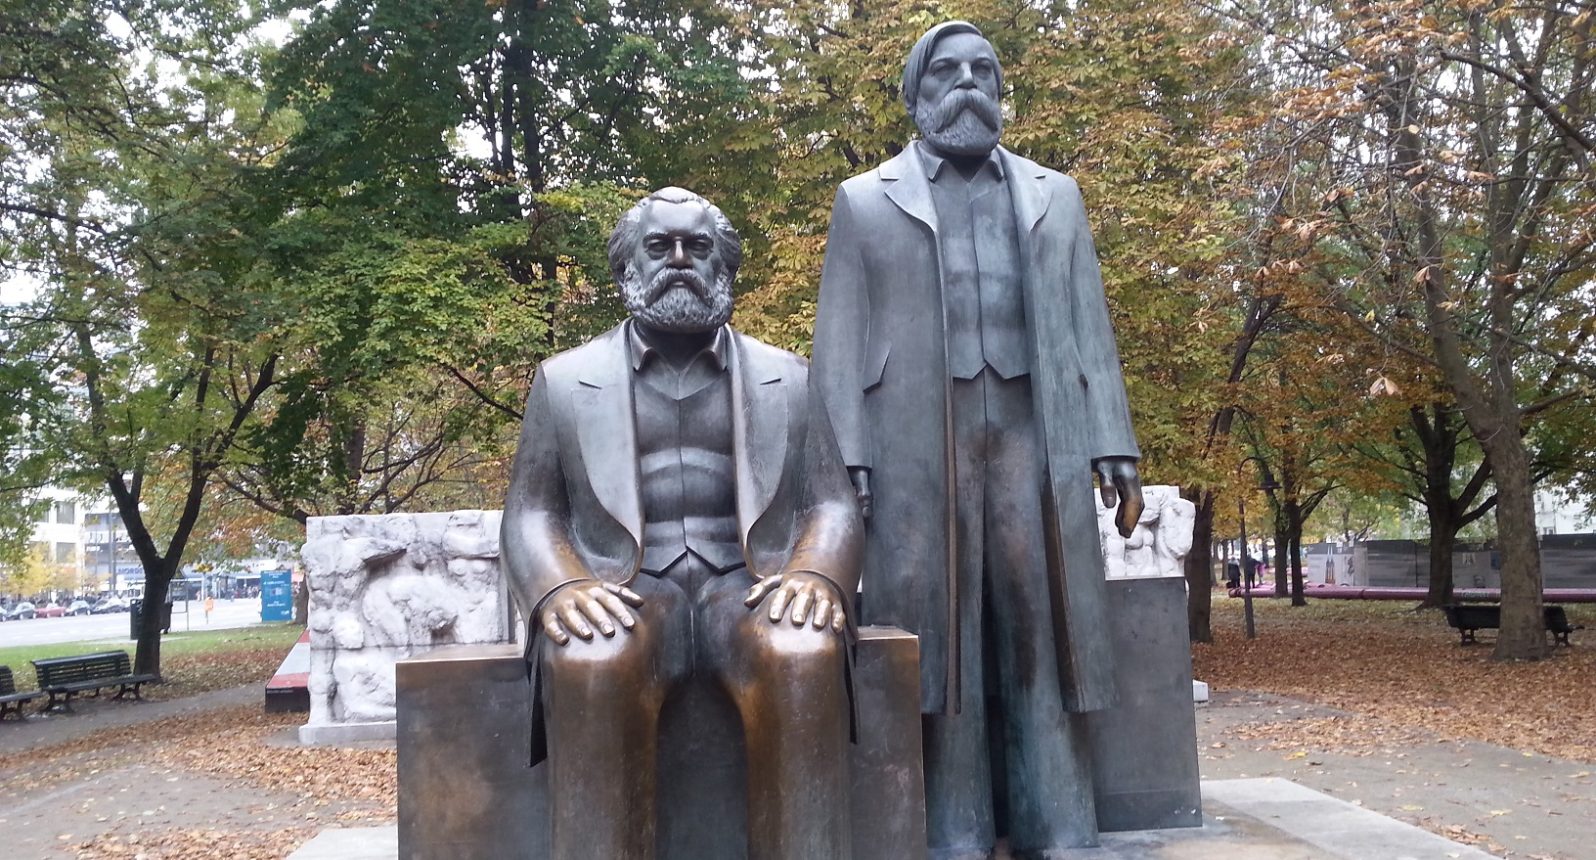 Bronzefiguren von Karl Marx und Friedrich Engels.